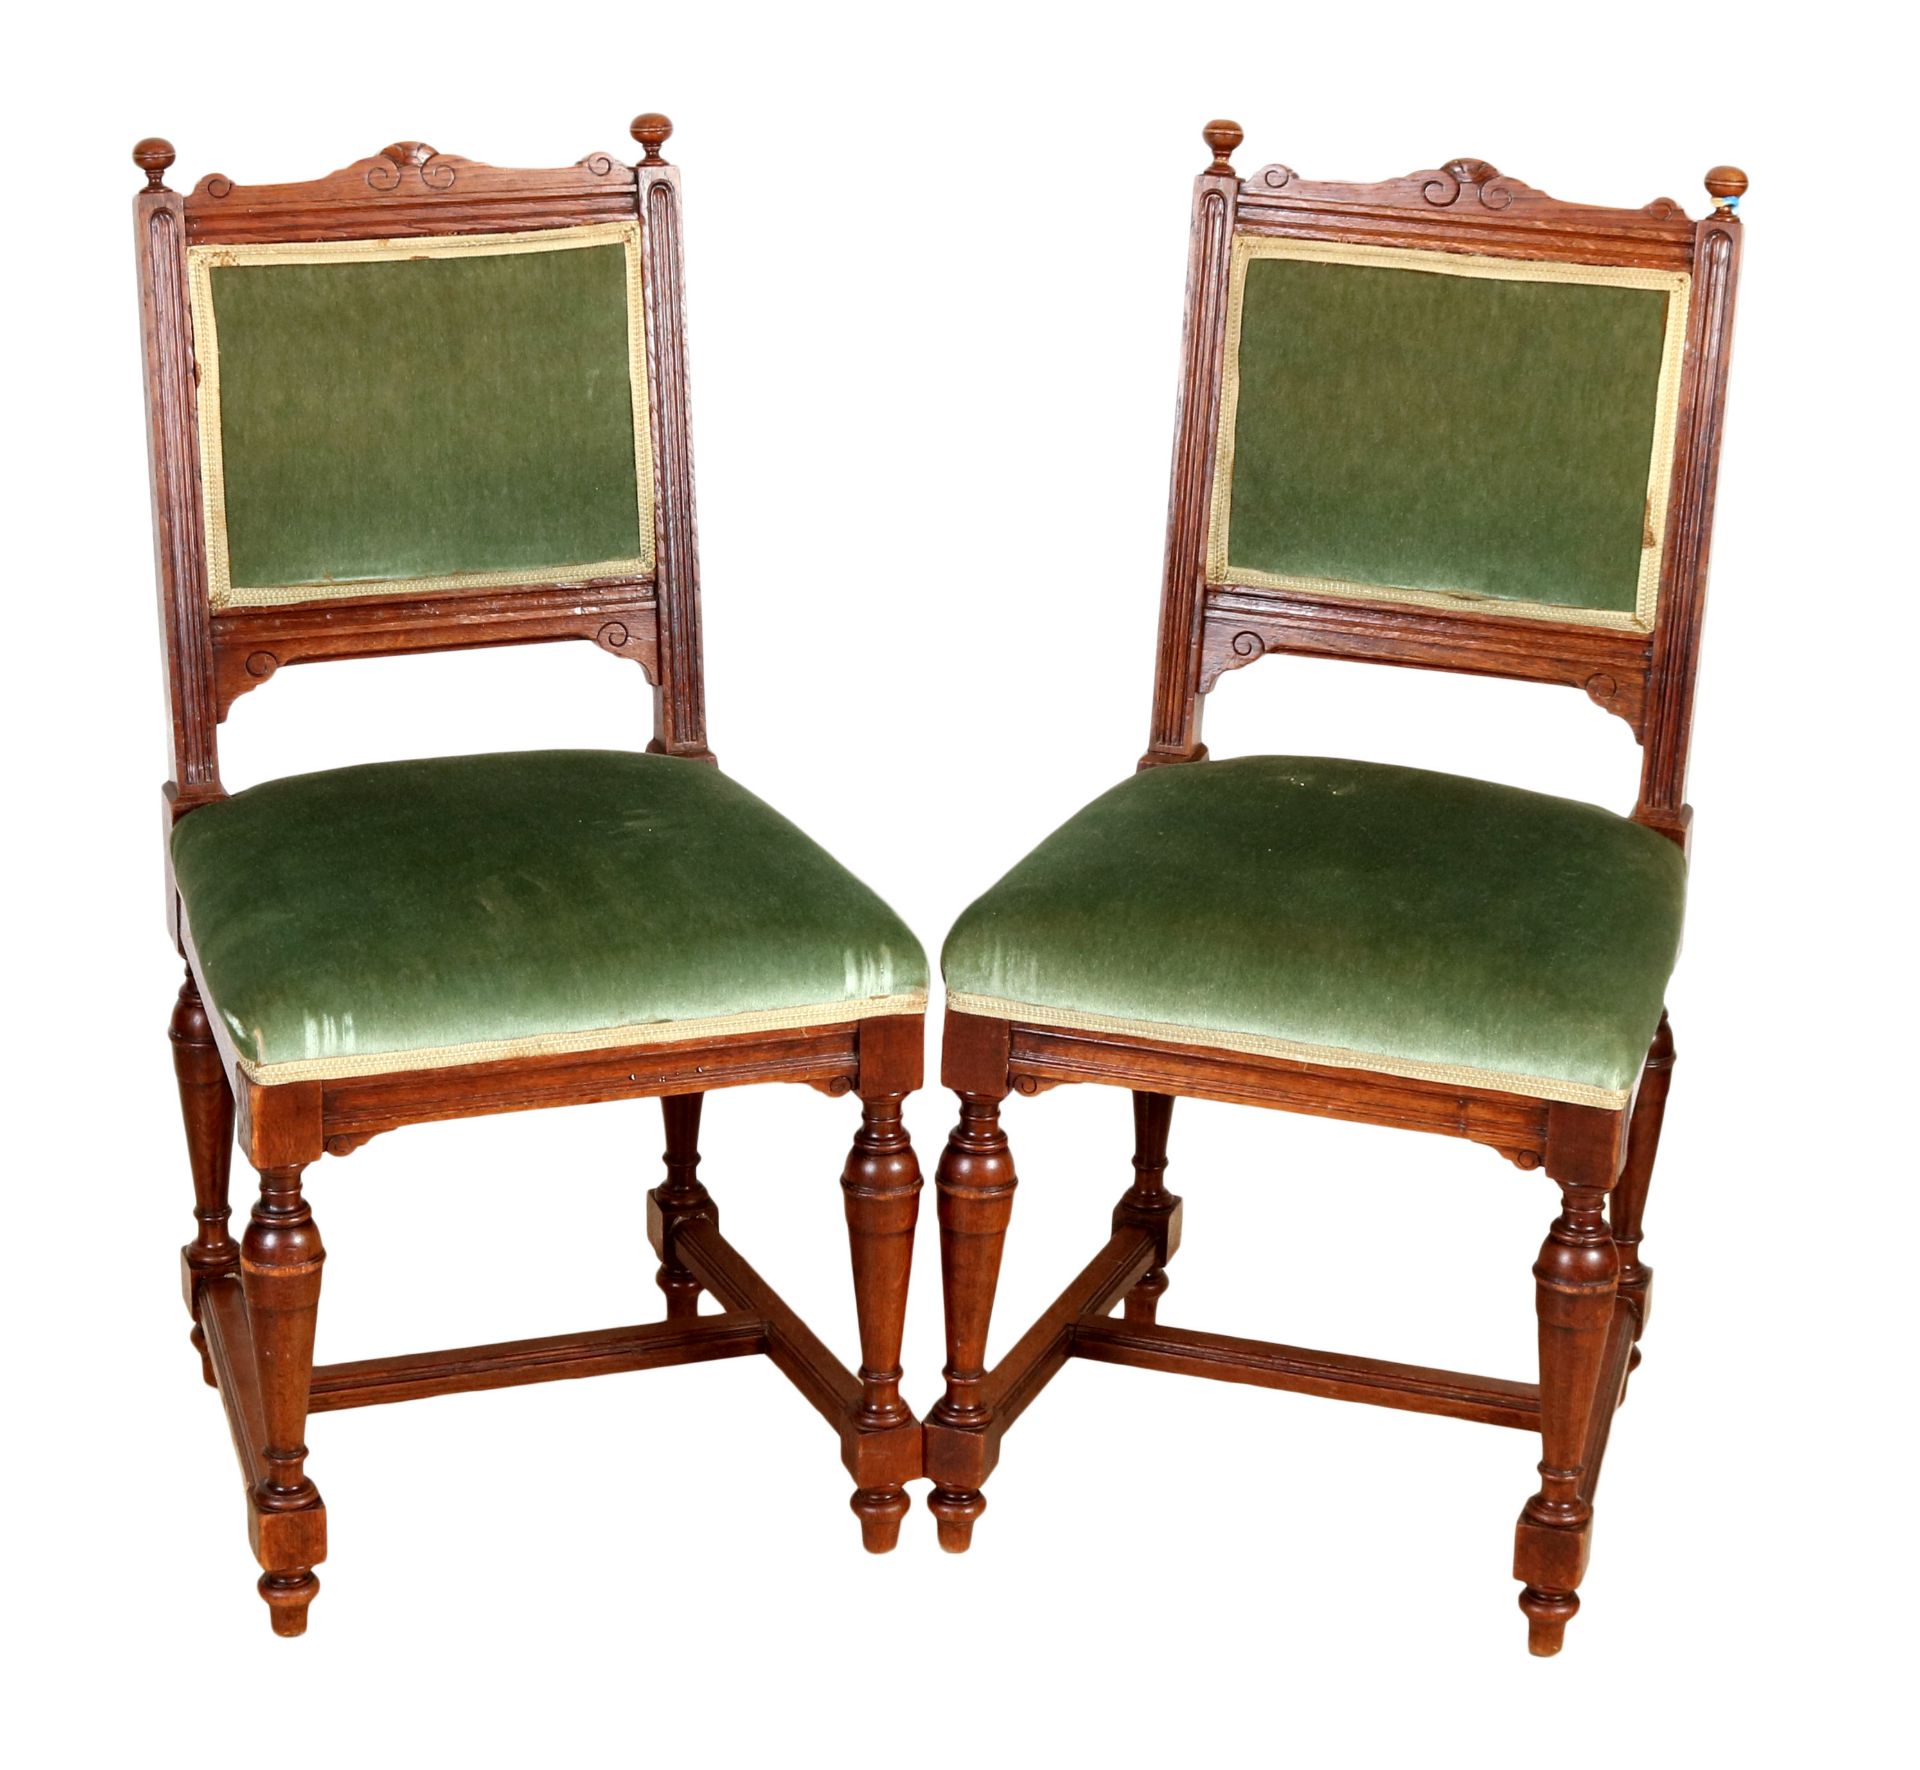 4 Stühle, Frankreich um 1880, Eiche massiv, gedrechselte Beine, grüner Mohair-Bezug, 93 x 4